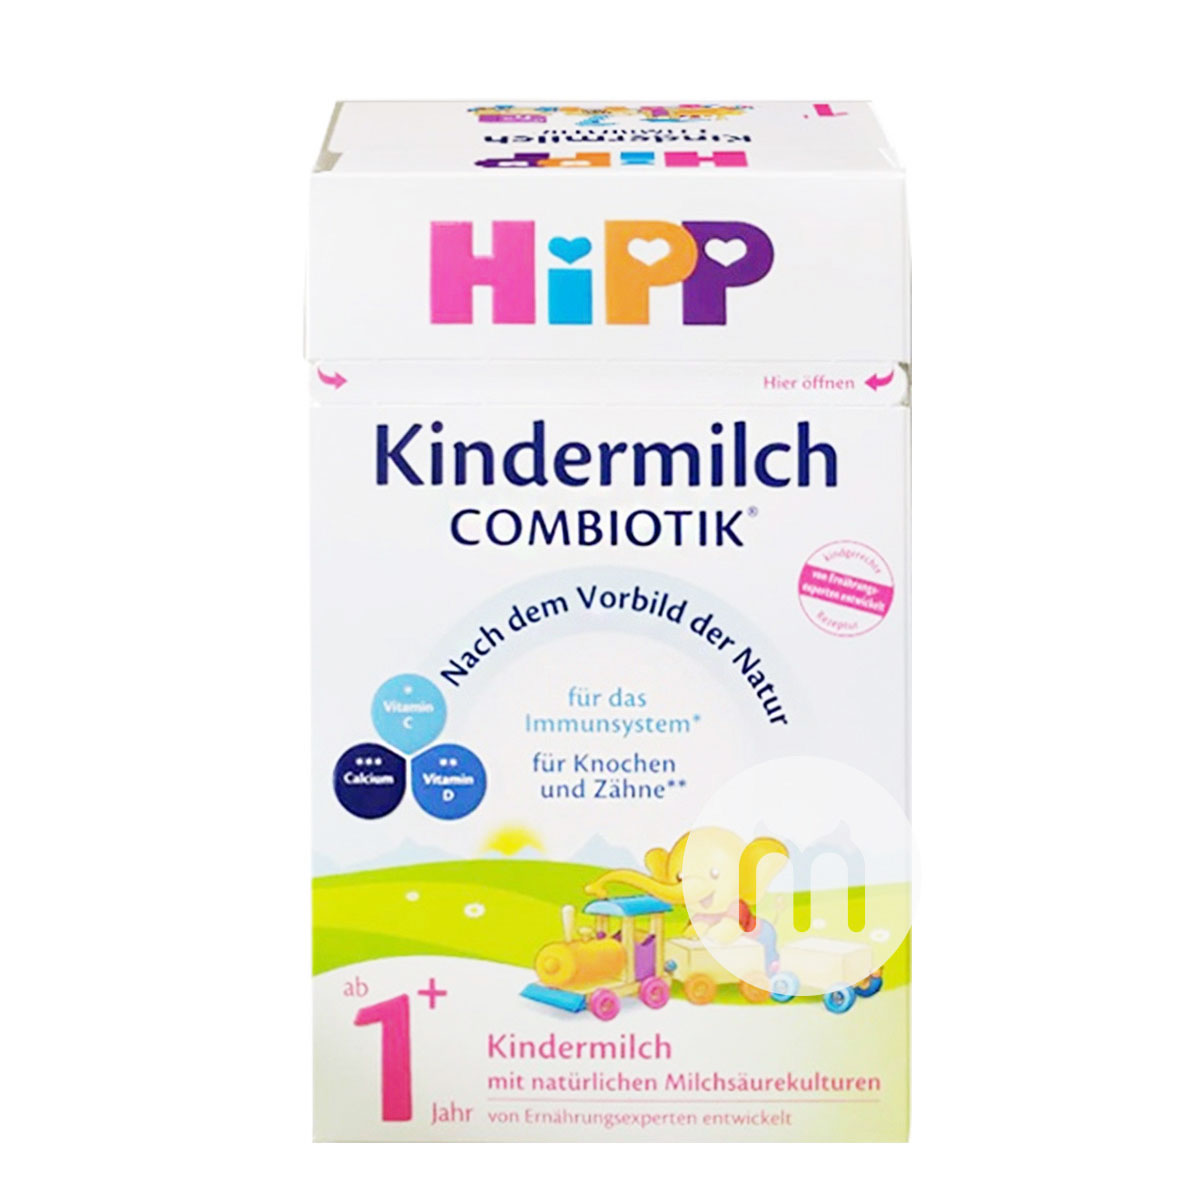 HiPP 德國喜寶益生菌奶粉4段*8盒 海外本土原版